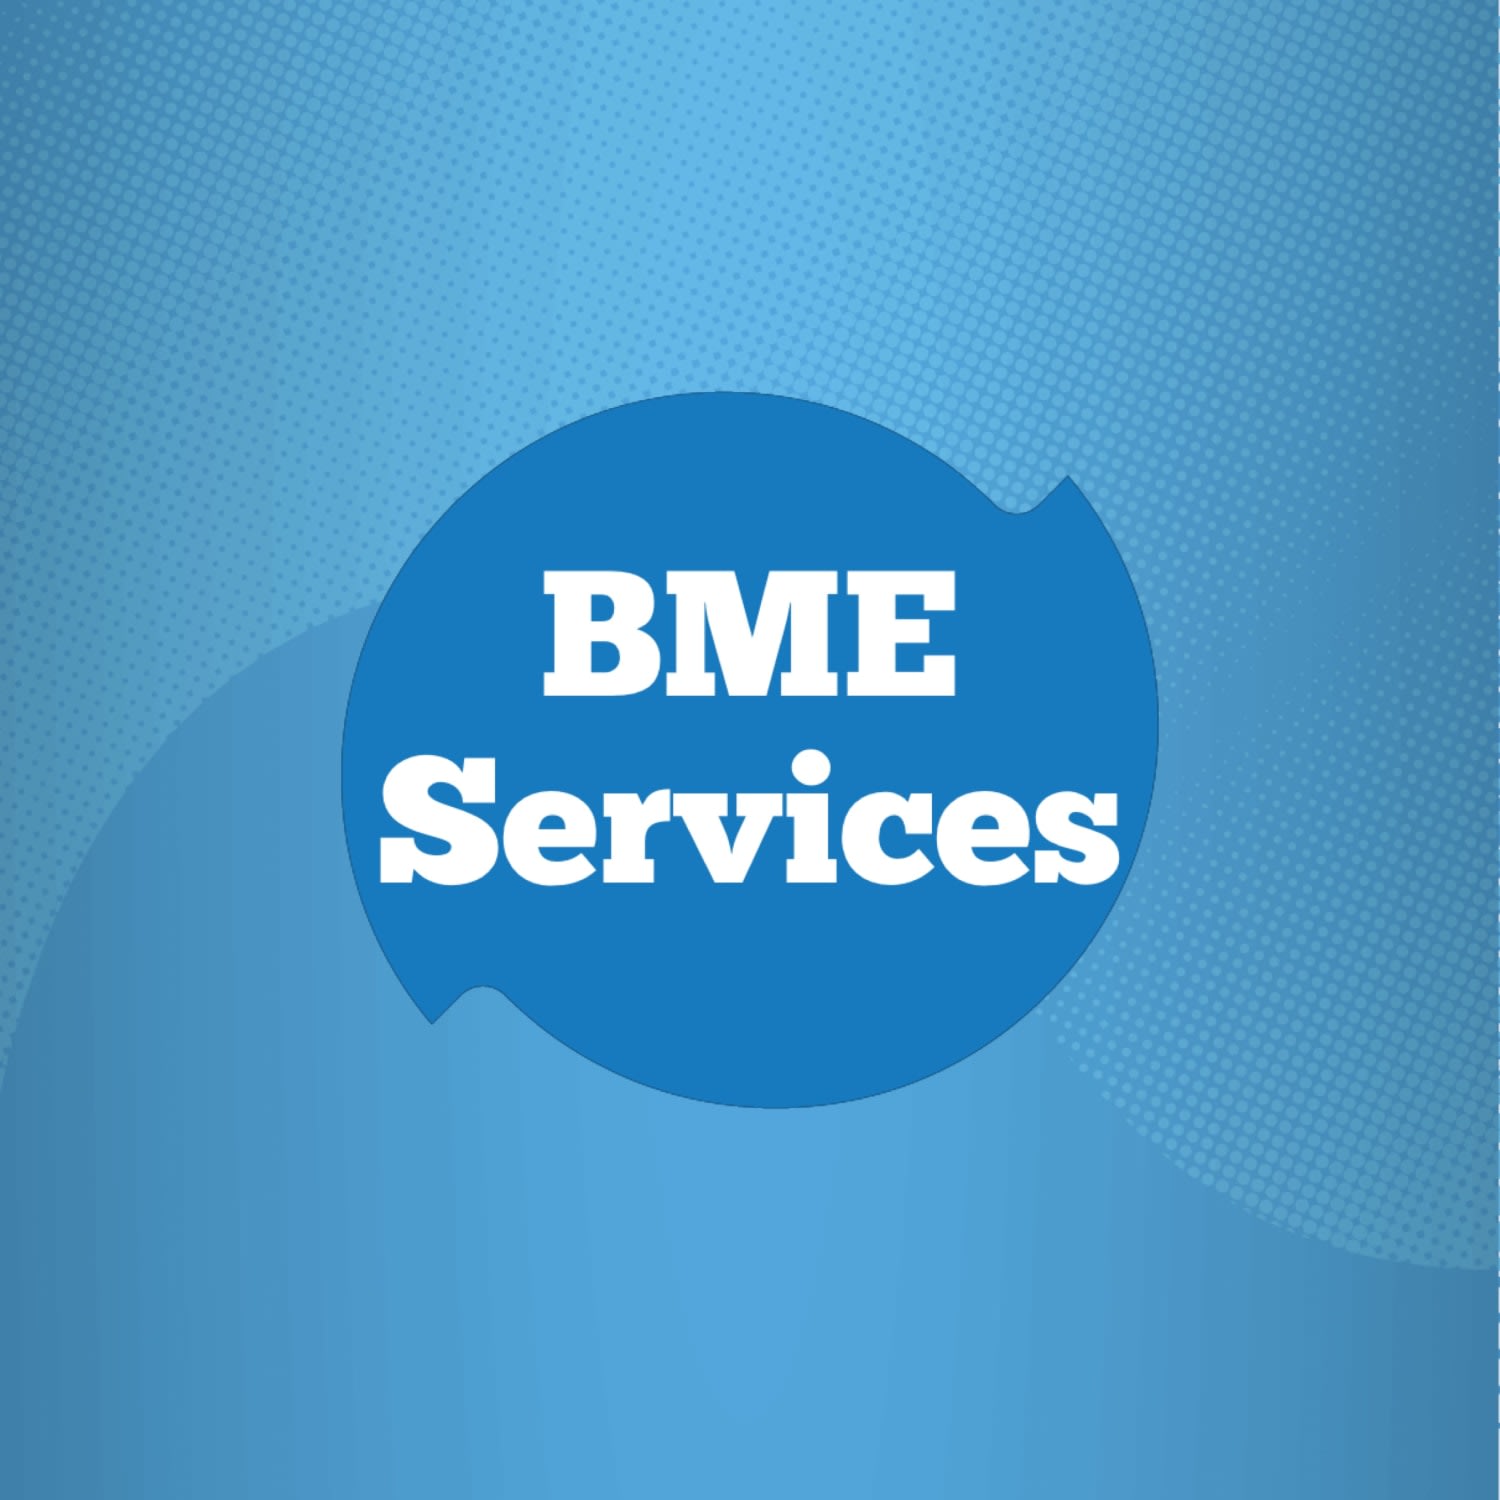 BME Services